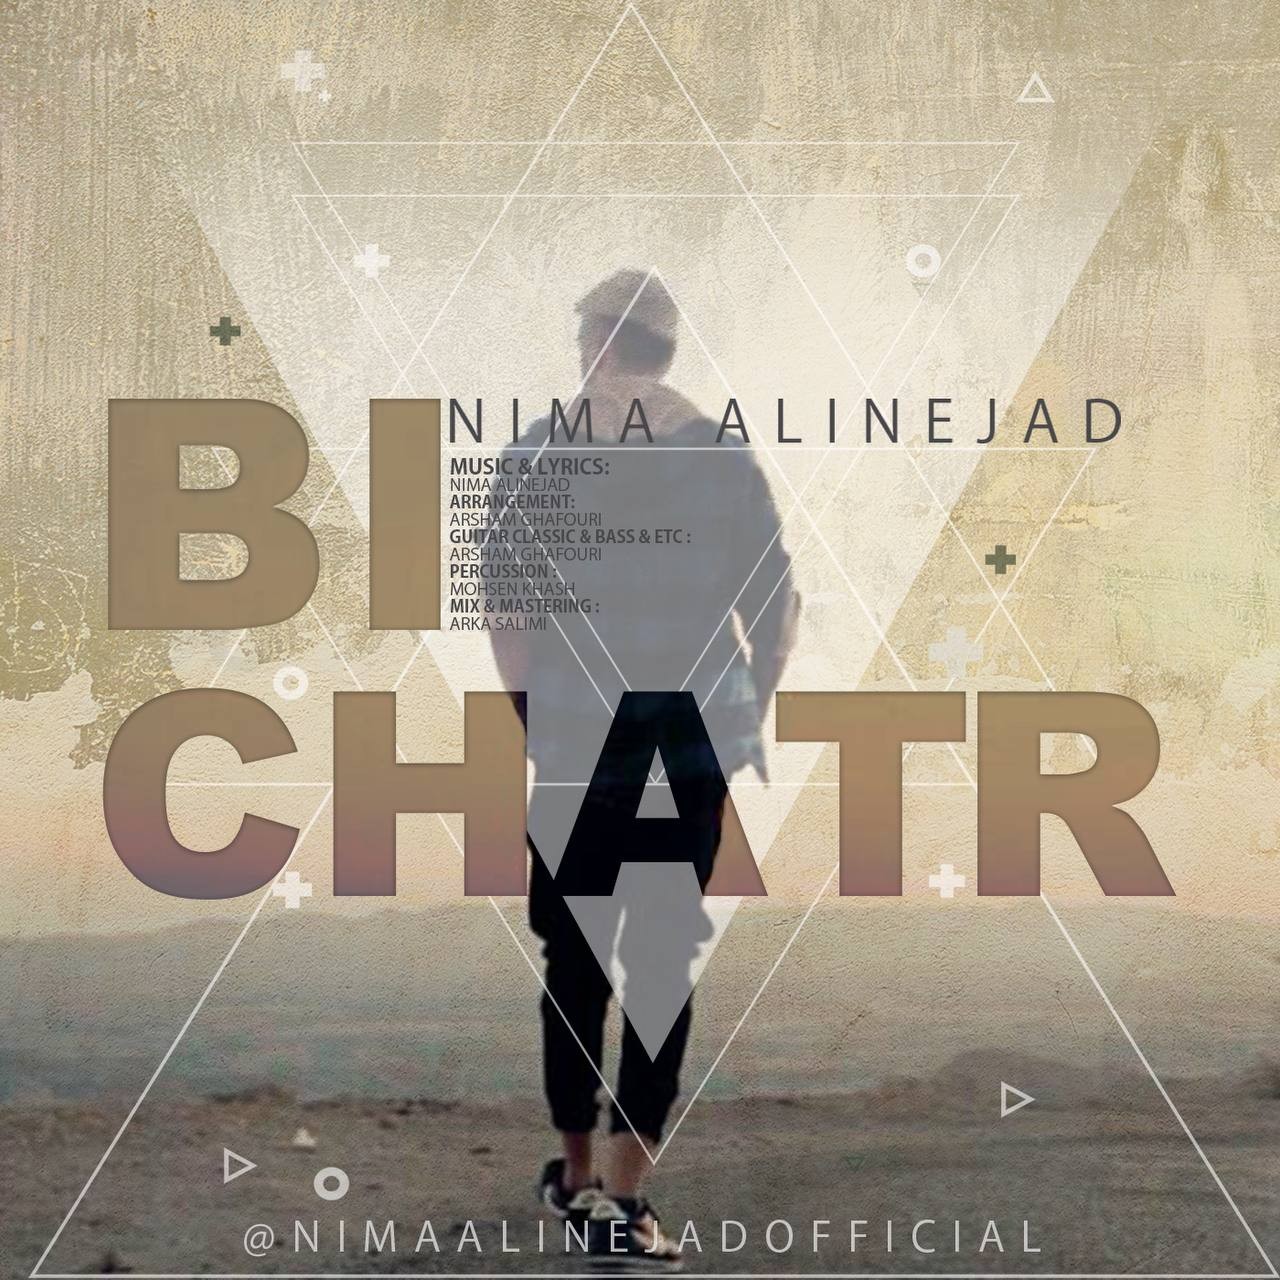 Nima Alinejad – Bi Chatr